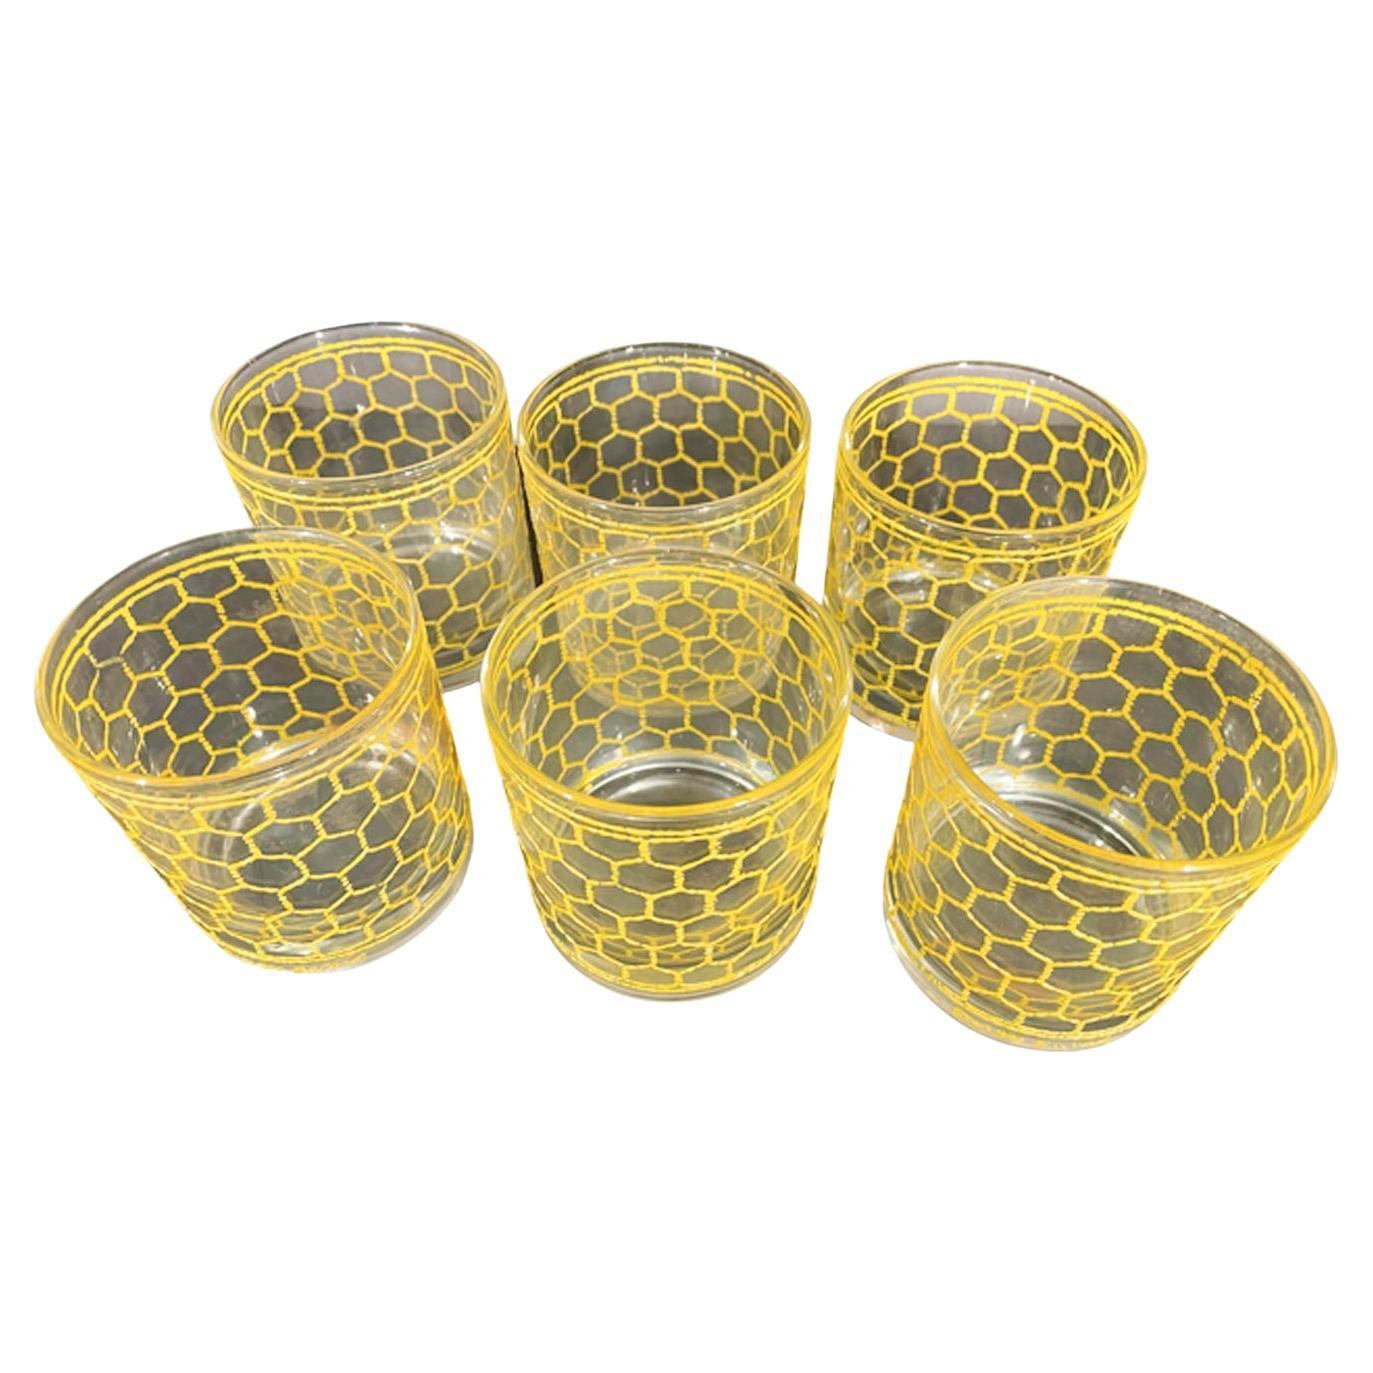 Six verres vintage Georges Briard Rocks en jaune glace à motif fil métallique